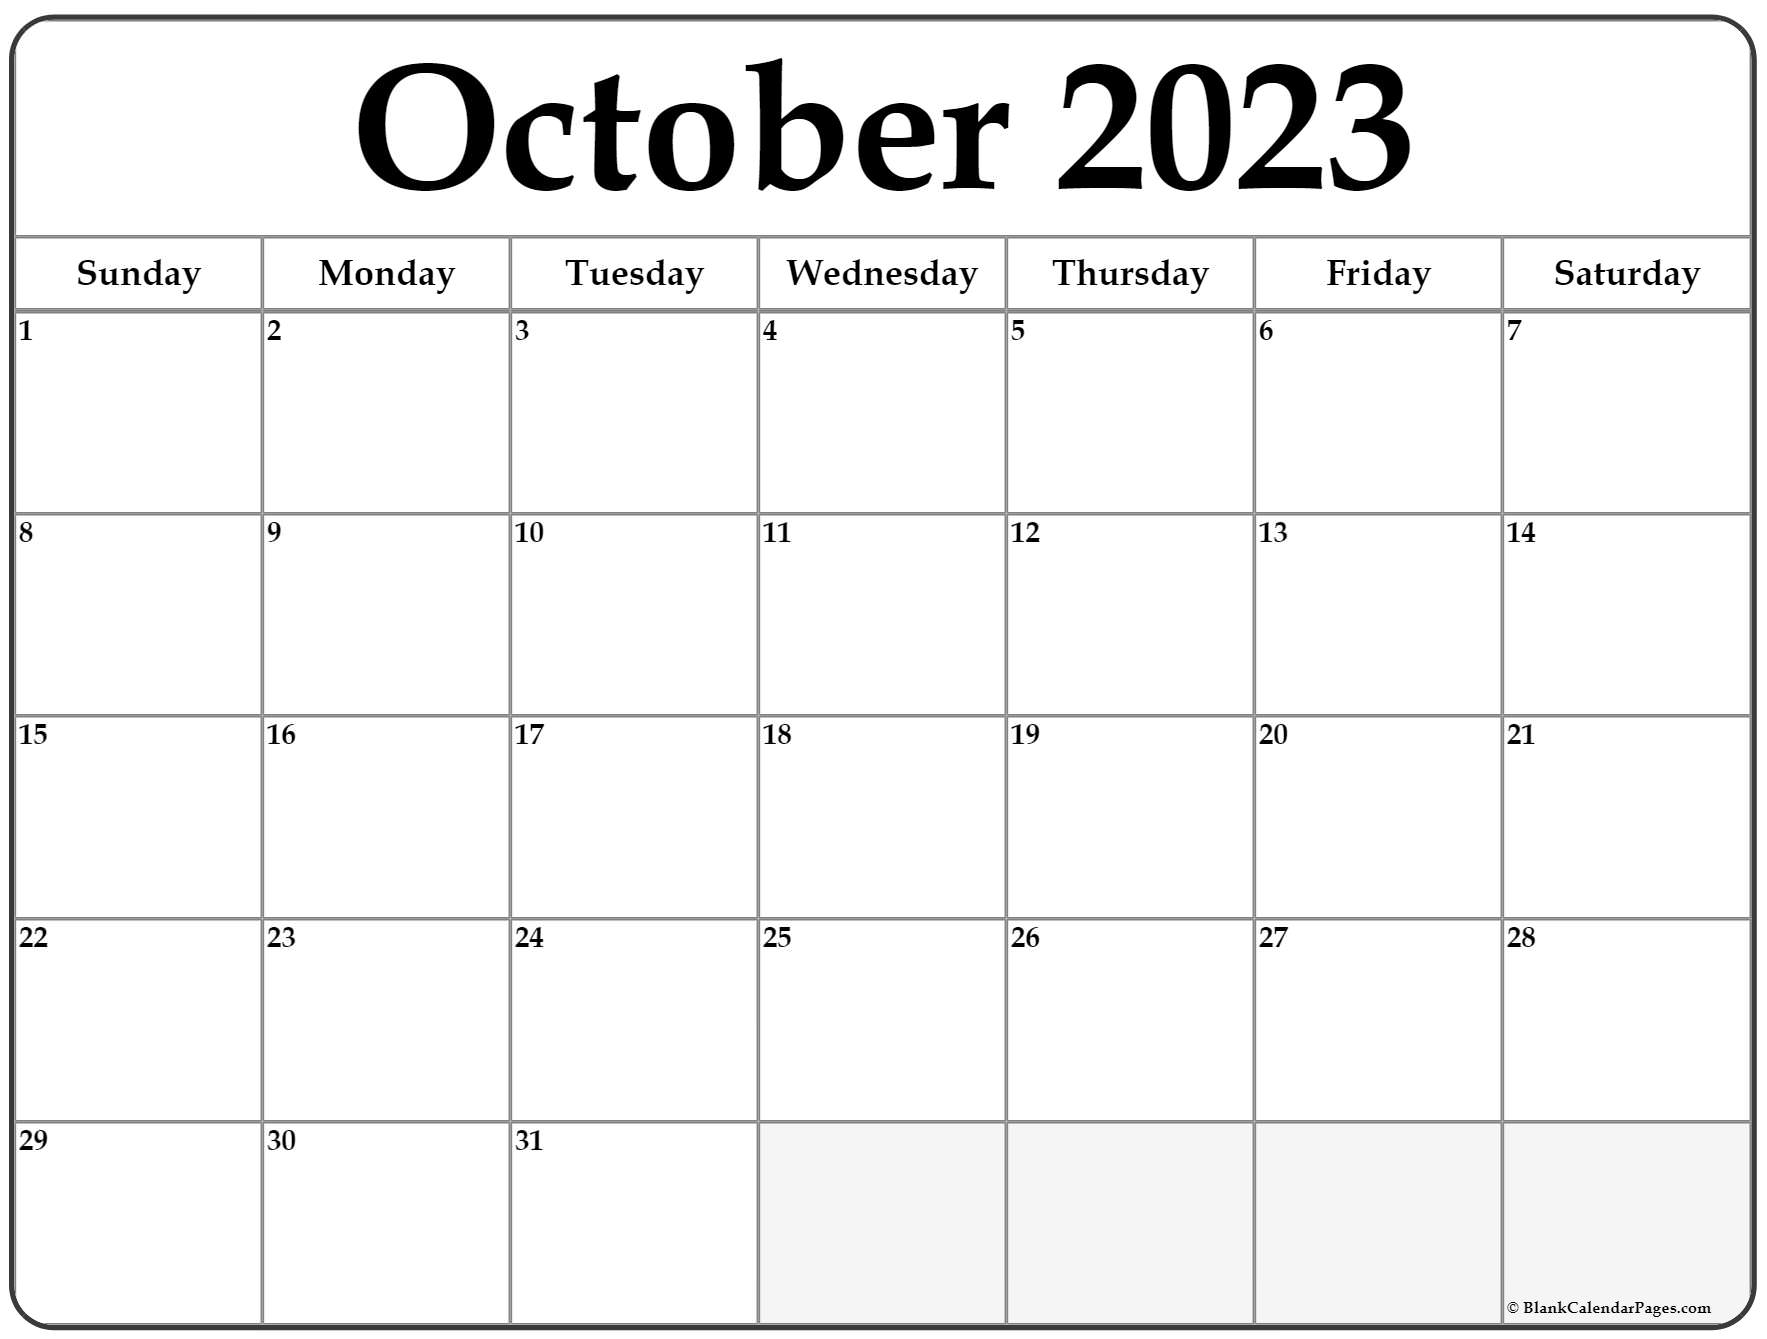 october-2023-calendar-october-2023-calendar-october-news